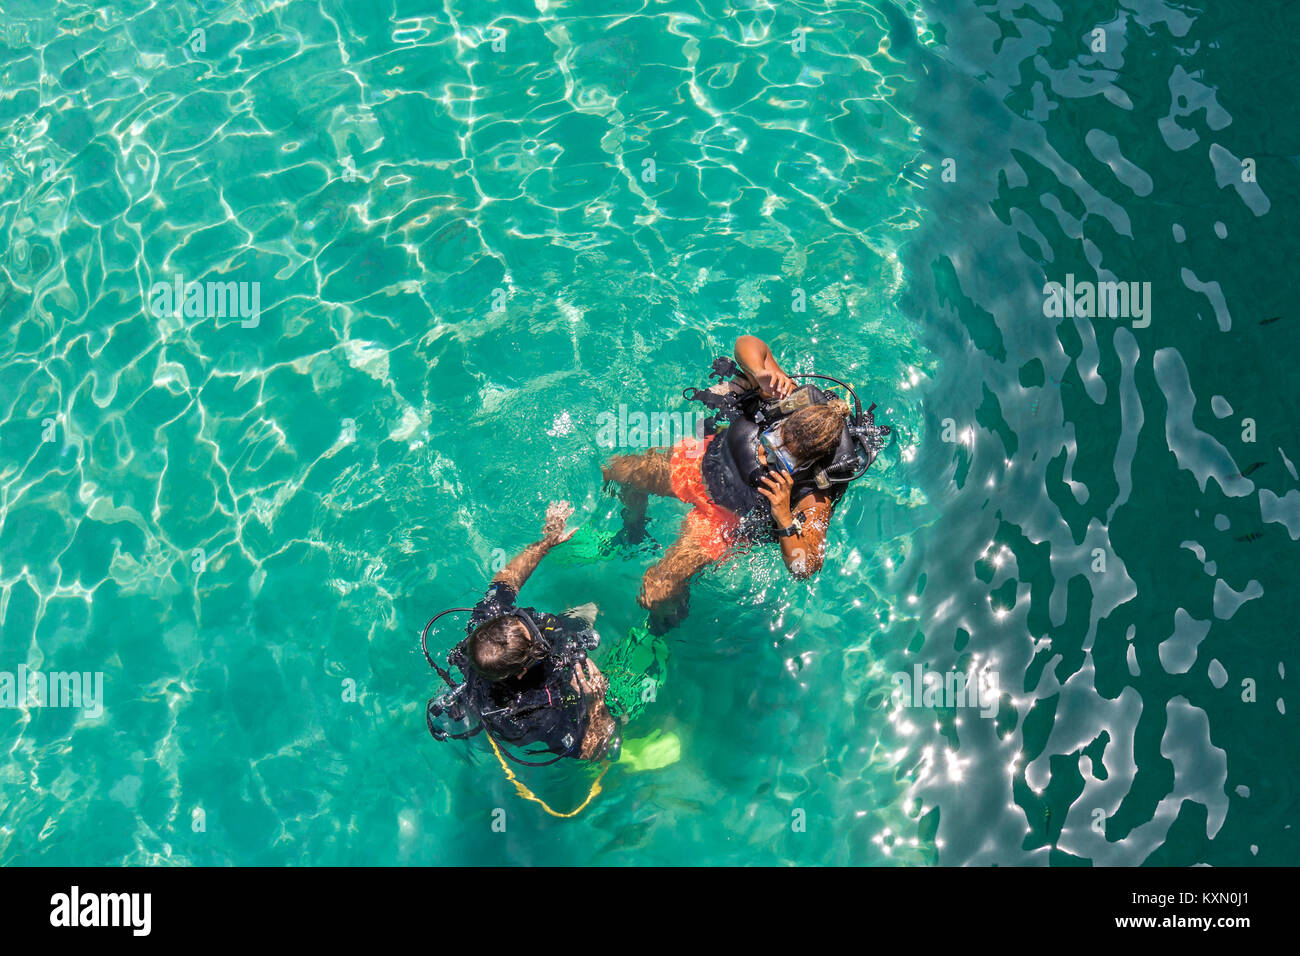 Un gruppo di Scuba Diving gli studenti hanno una lezione in shallow acqua cristallina di un'isola tropicale. Foto Stock